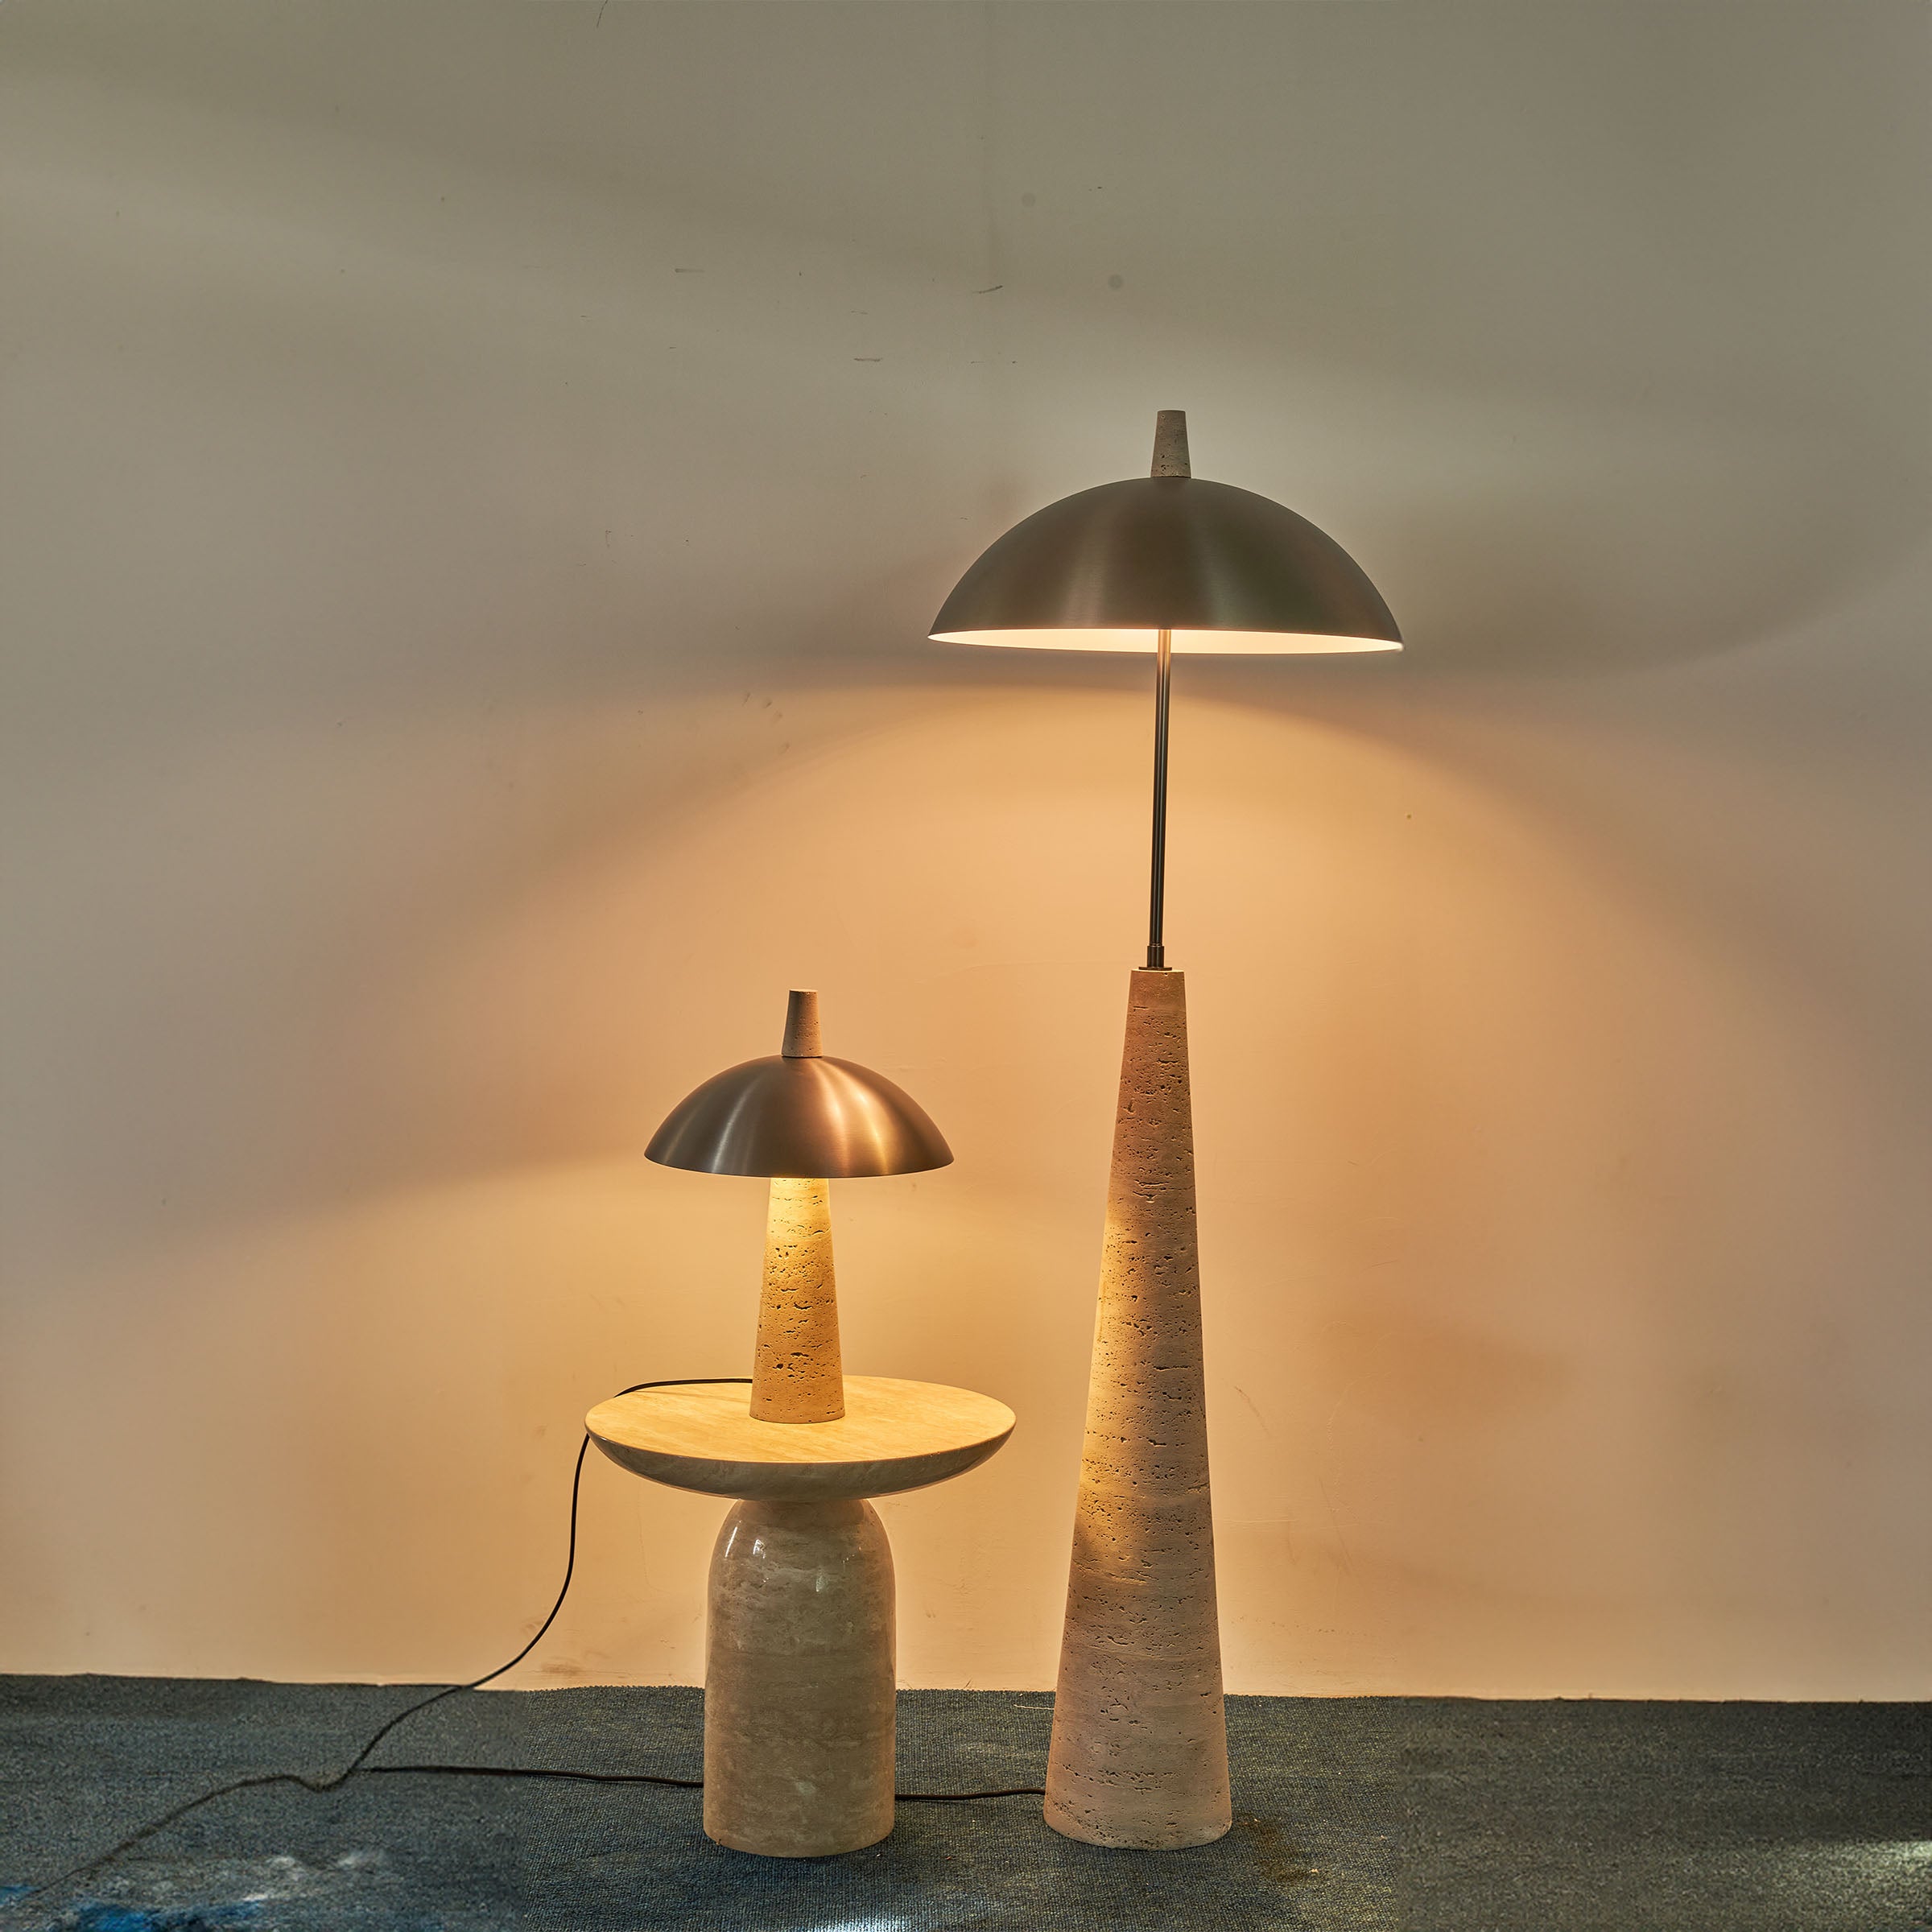 Natural  Travertine Floor Lamp JA-015F -  Floor Lamps | مصباح أرضي من الحجر الجيري الطبيعي - ebarza Furniture UAE | Shop Modern Furniture in Abu Dhabi & Dubai - مفروشات ايبازرا في الامارات | تسوق اثاث عصري وديكورات مميزة في دبي وابوظبي